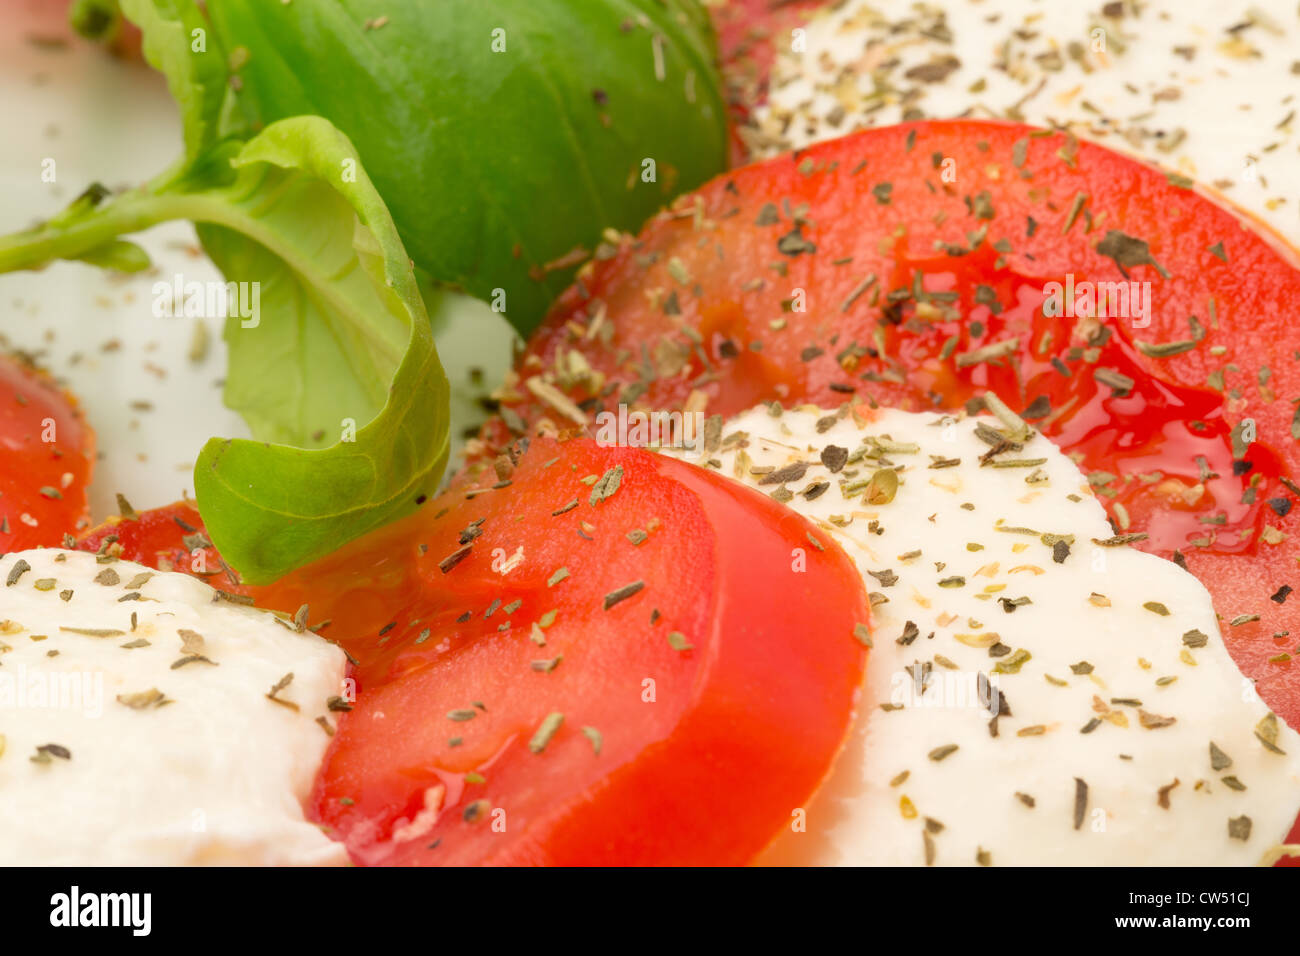 Eine klassische Caprese-Salat mit frischen Mozzarellakäse und saftige rote Tomate mit Basilikum Beilage - Studio gedreht Stockfoto